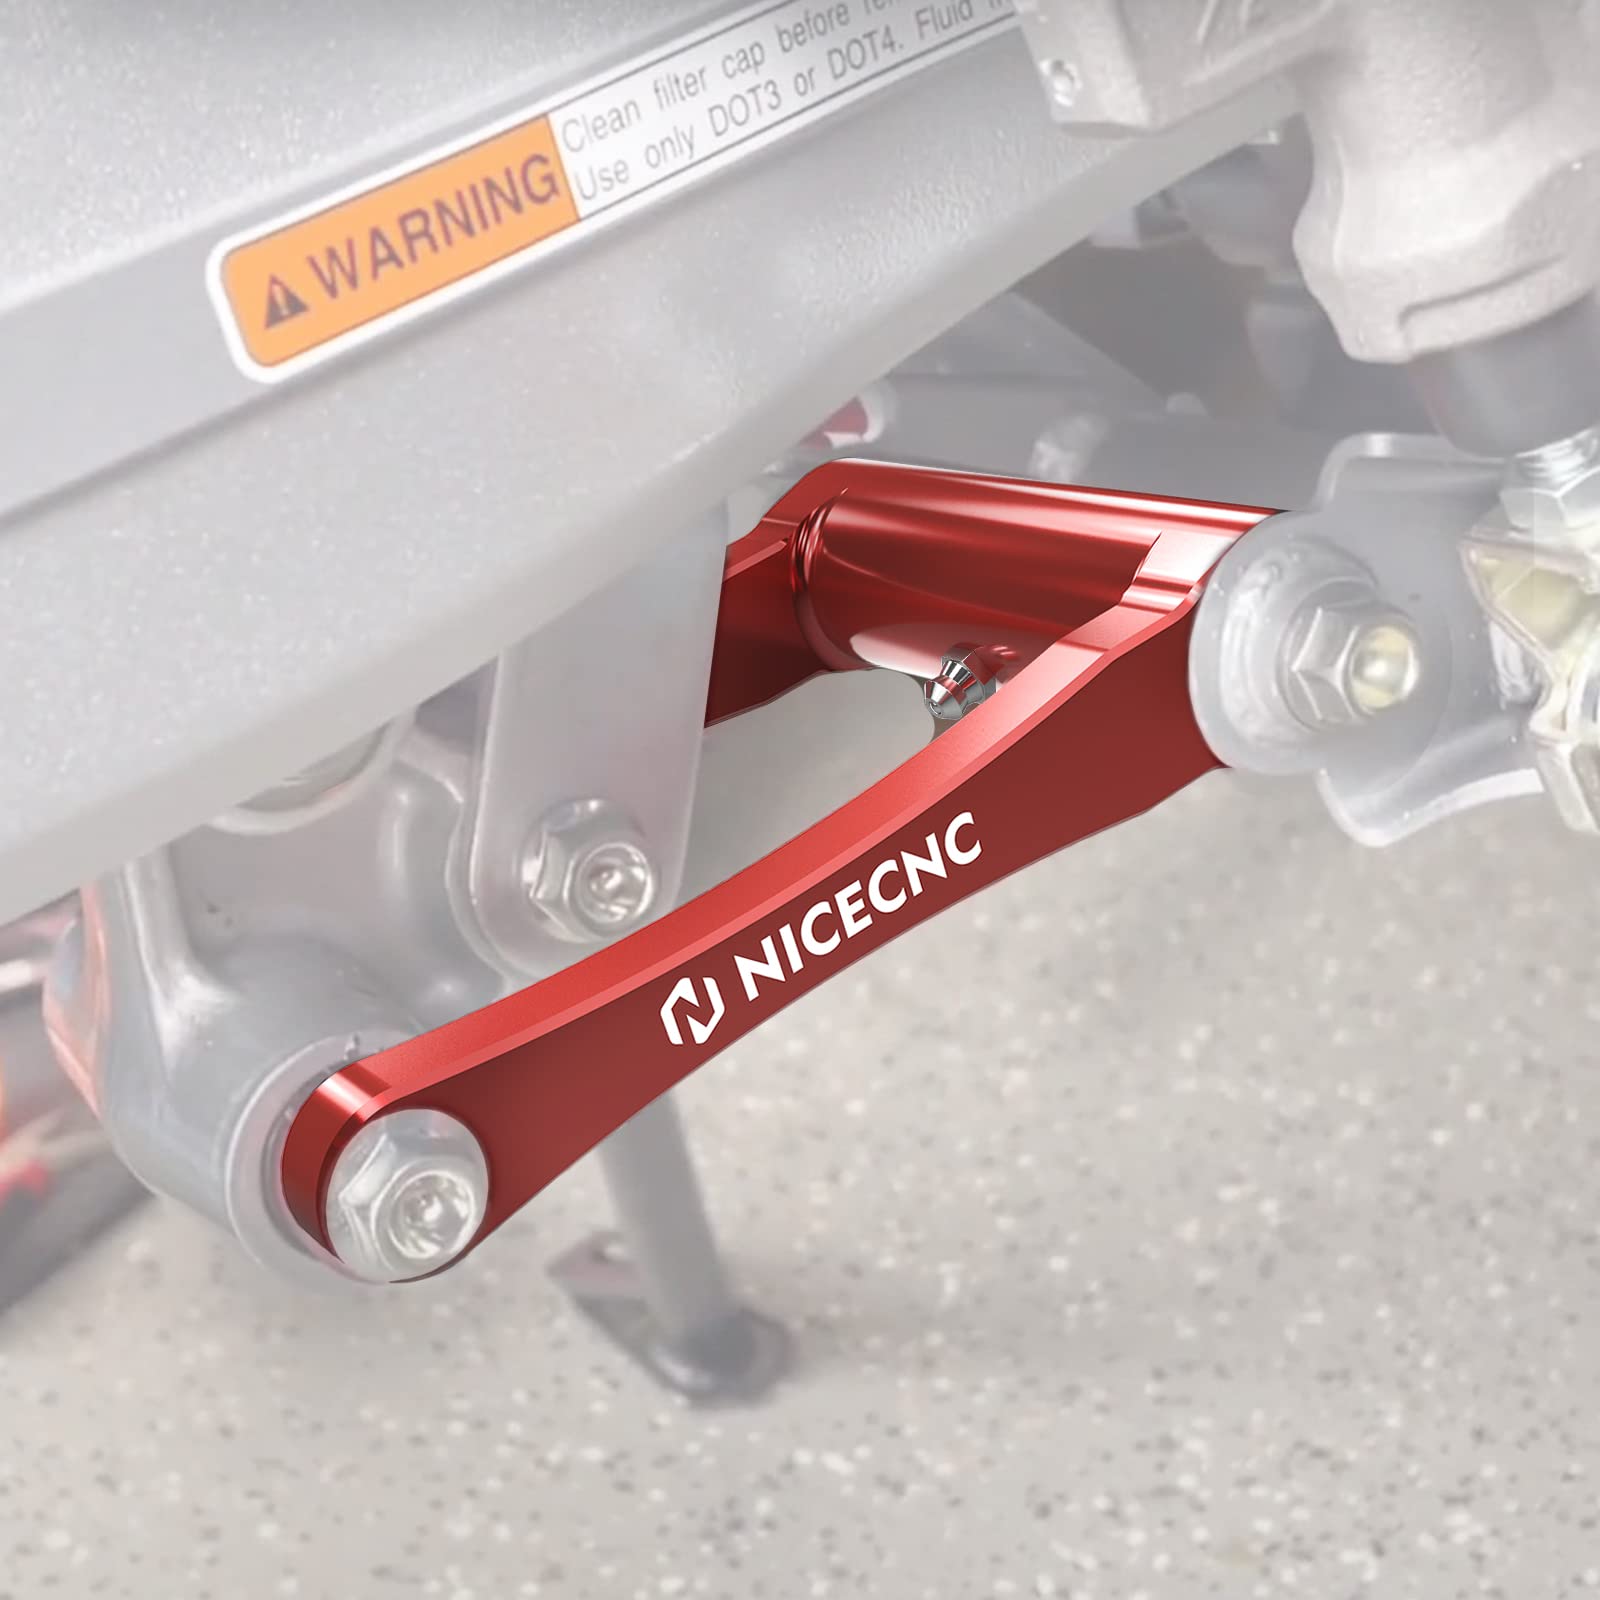 NICECNC 1.75 Inch Rot Tieferlegungslenker-Kit Lowering link Compatible with Honda CRF300L 2021-2023,CRF300L Rally 2021 2022 2023,Aluminium,Eloxiert,CNC-gefräst,52475-K1T-E10 von NICECNC